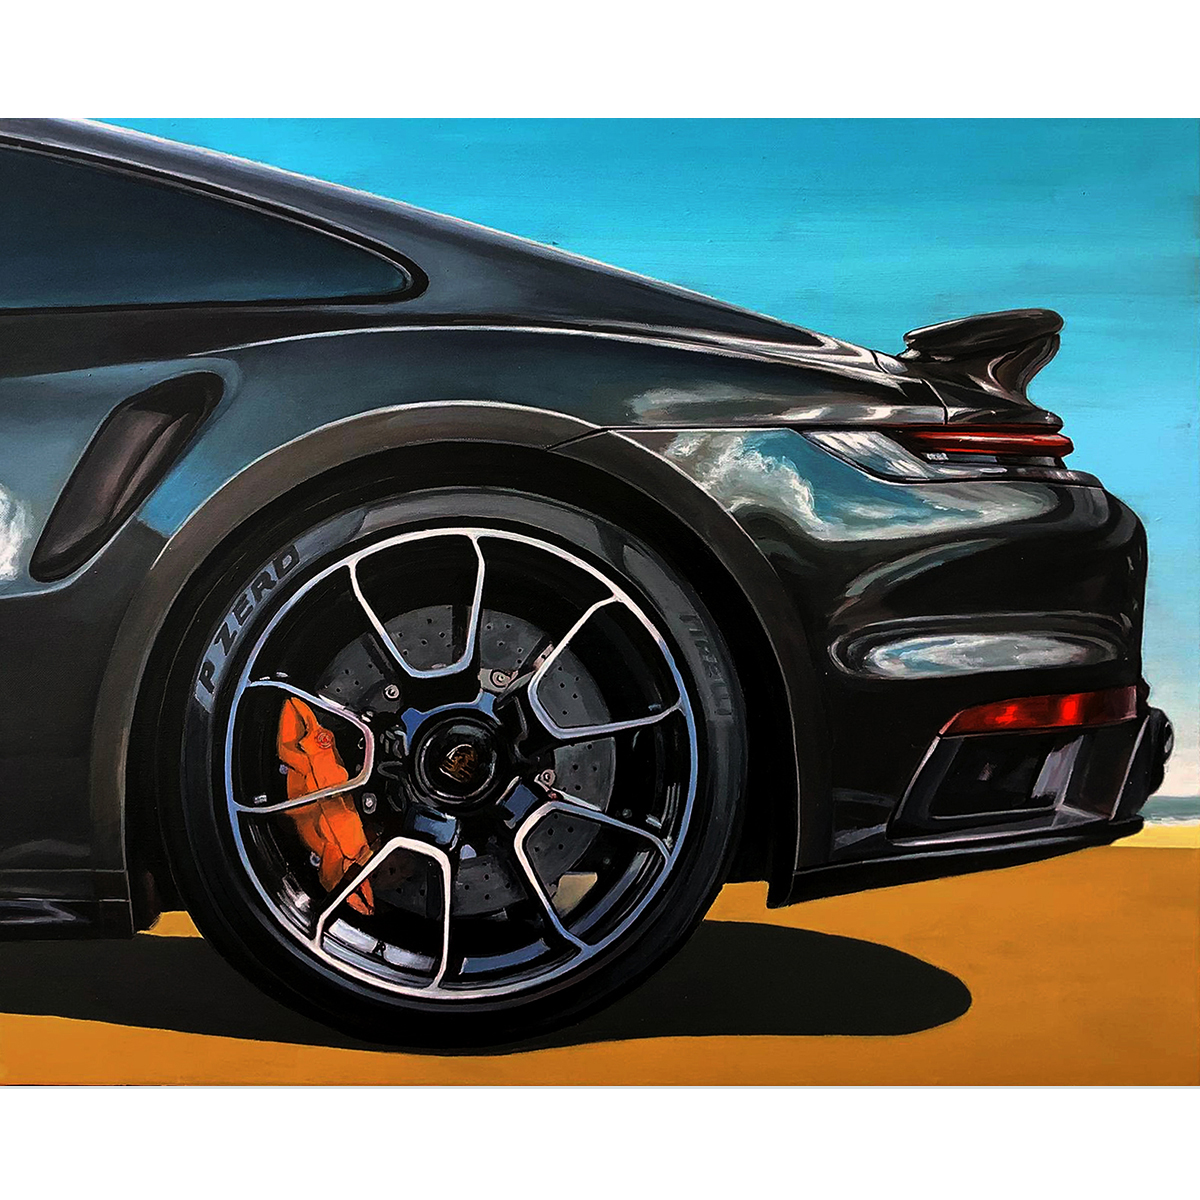 Fabrian acrylique et huile sur toile Porsche 911S